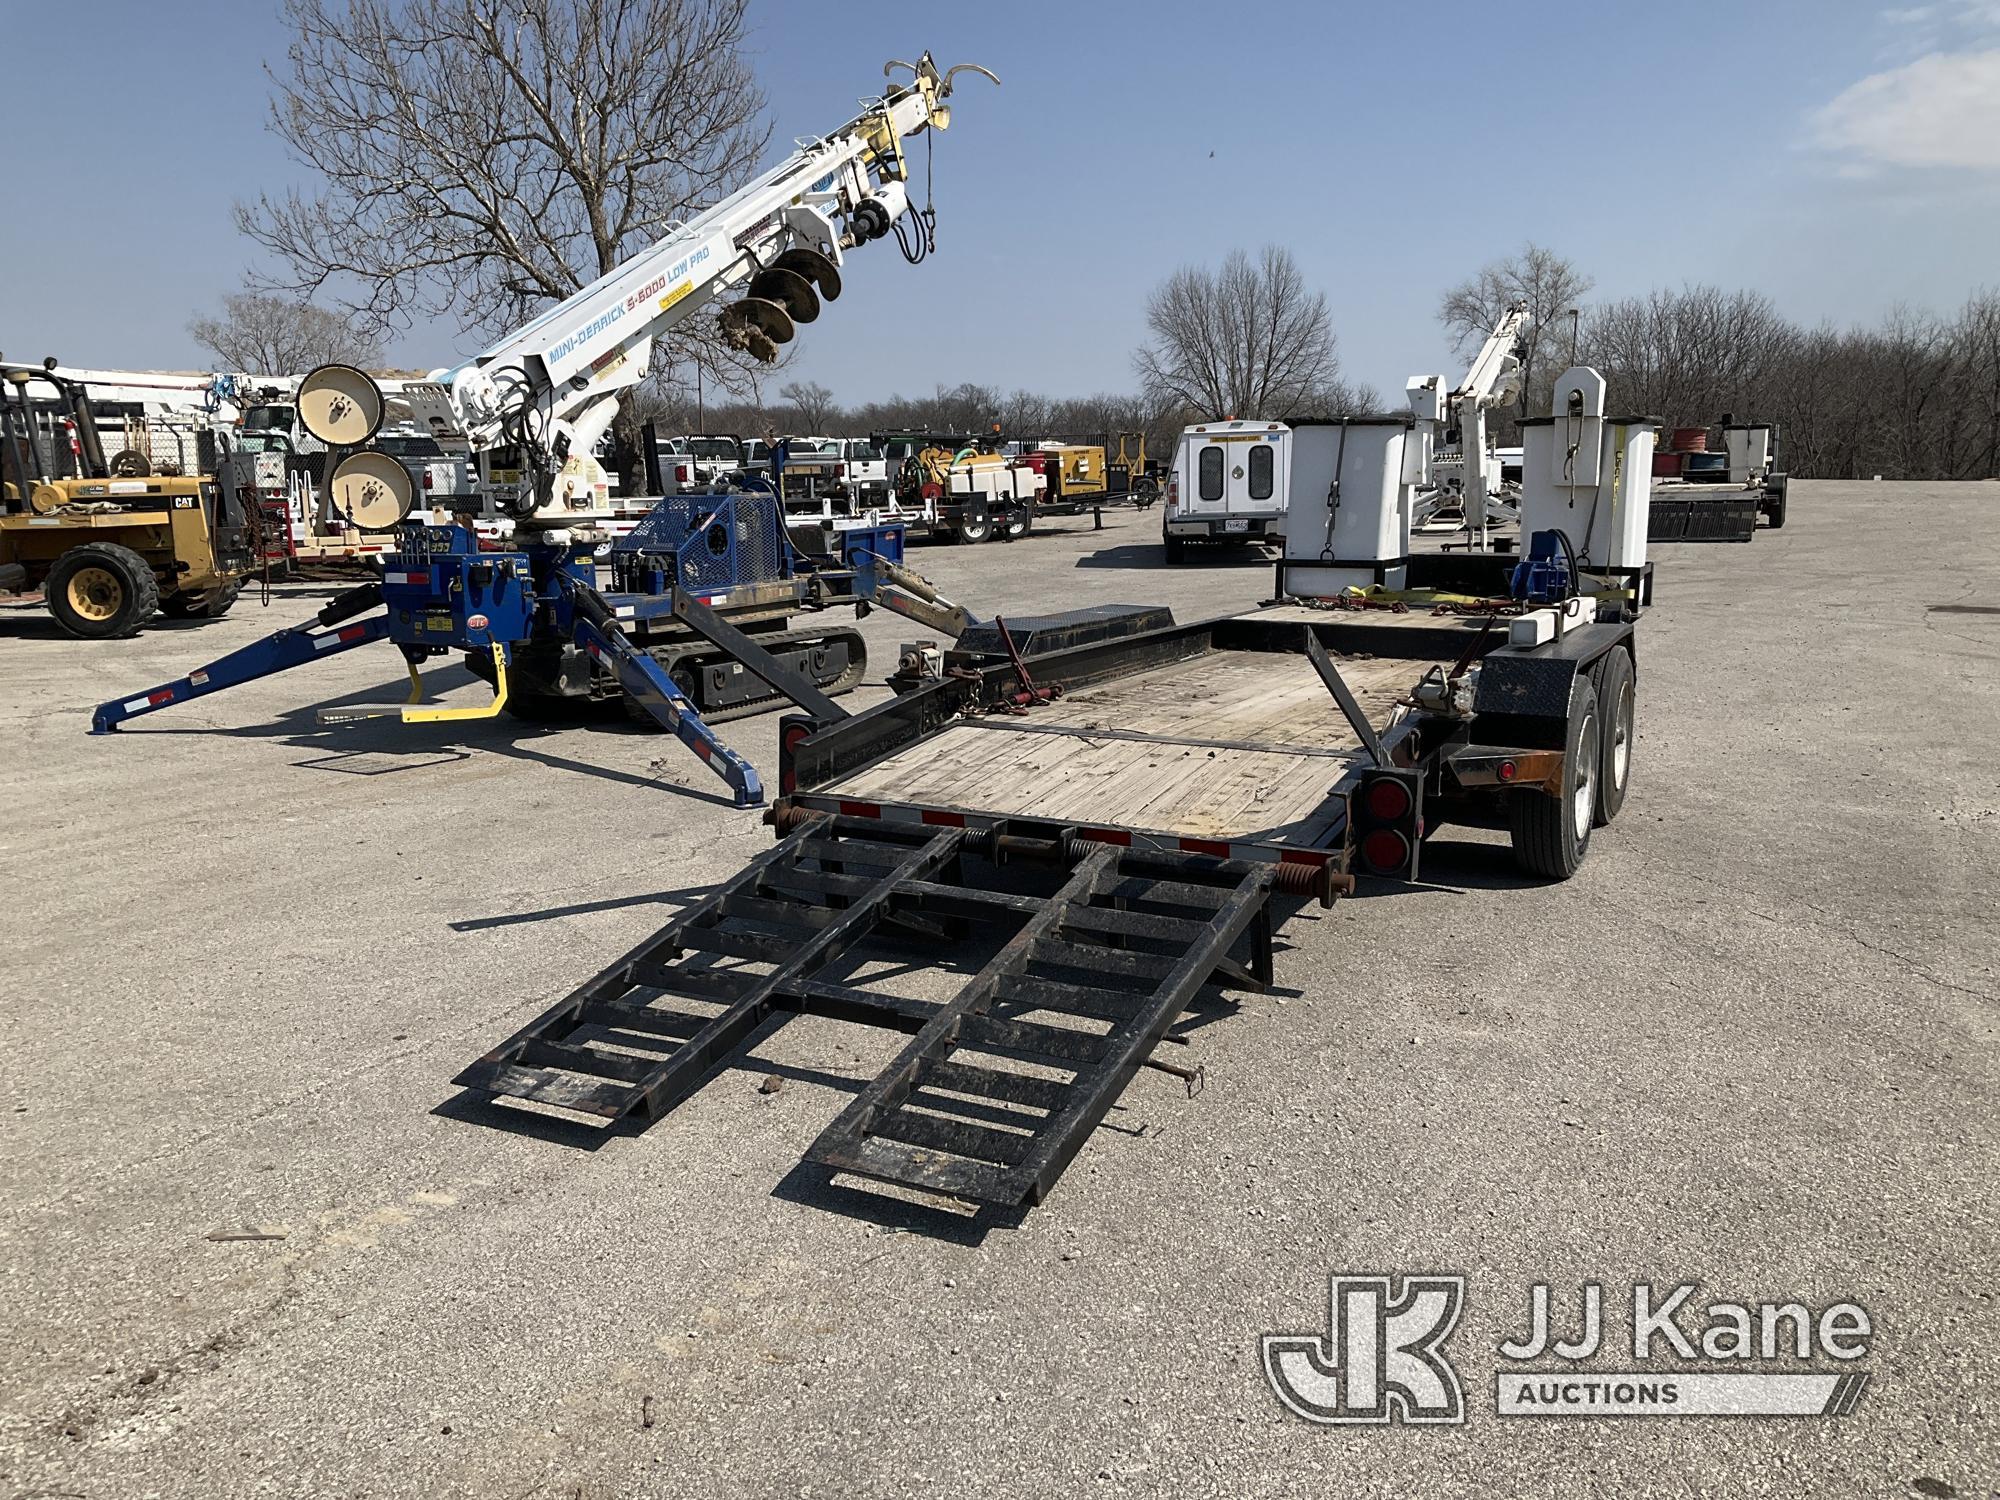 (Kansas City, MO) Skylift S6000 Runs, Moves, & Operates